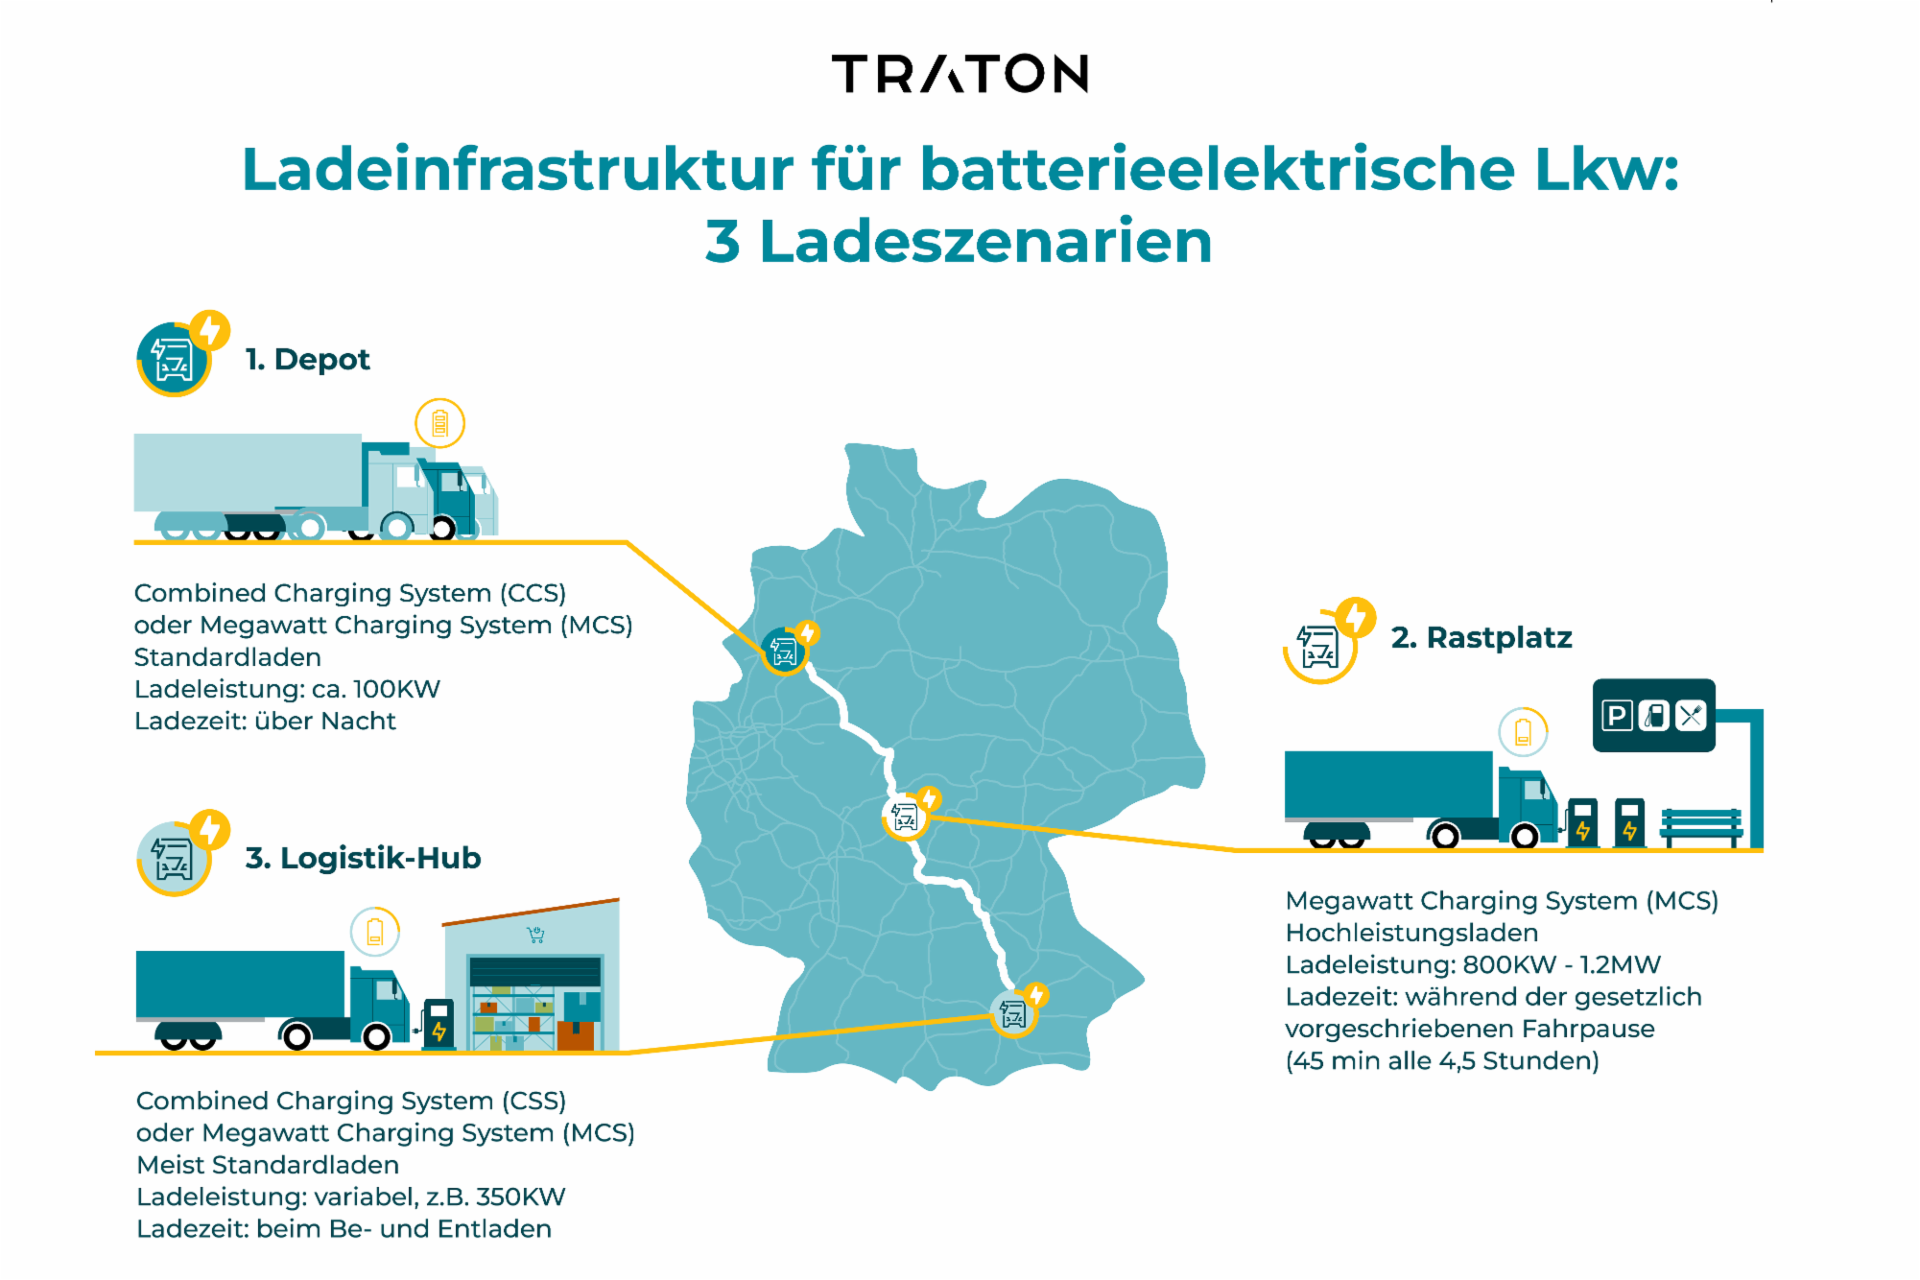 Karte von Deutschland mit 3 Ladeszenarien für batterieelektrische Lkw